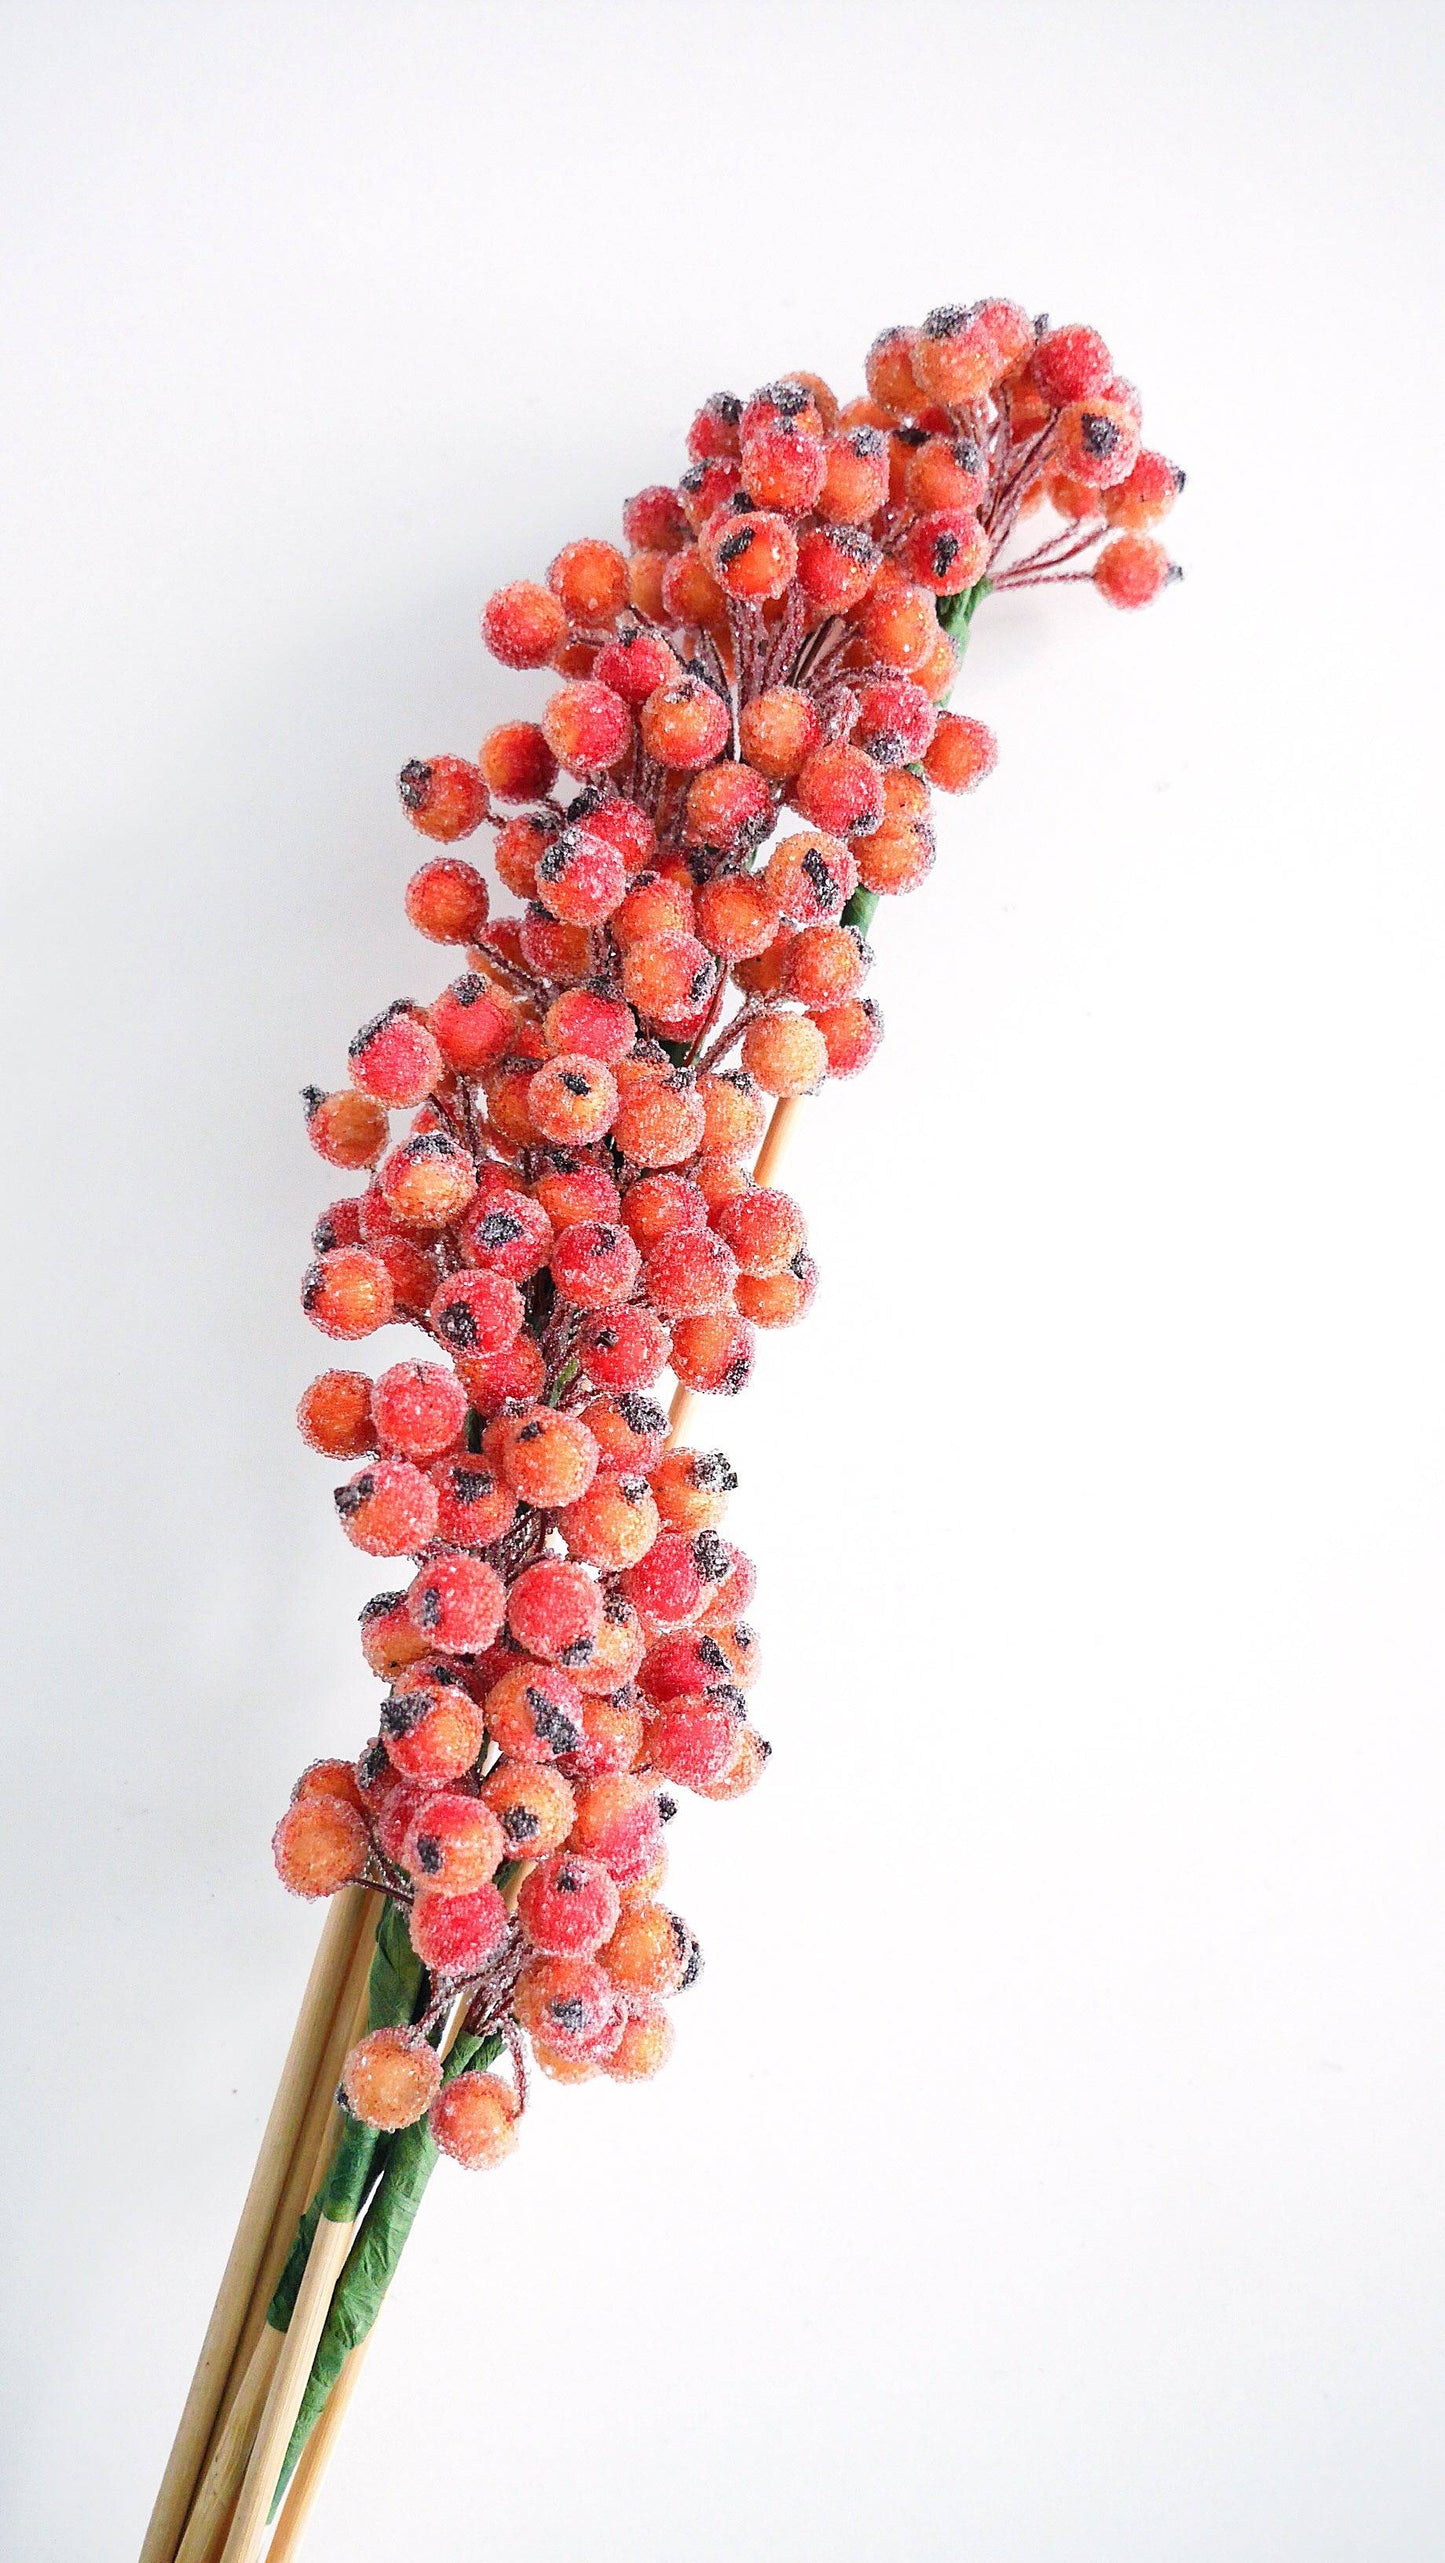 Berry Cluster gezuckert Trockenblumen - Der Backmichgluecklich Online Shop